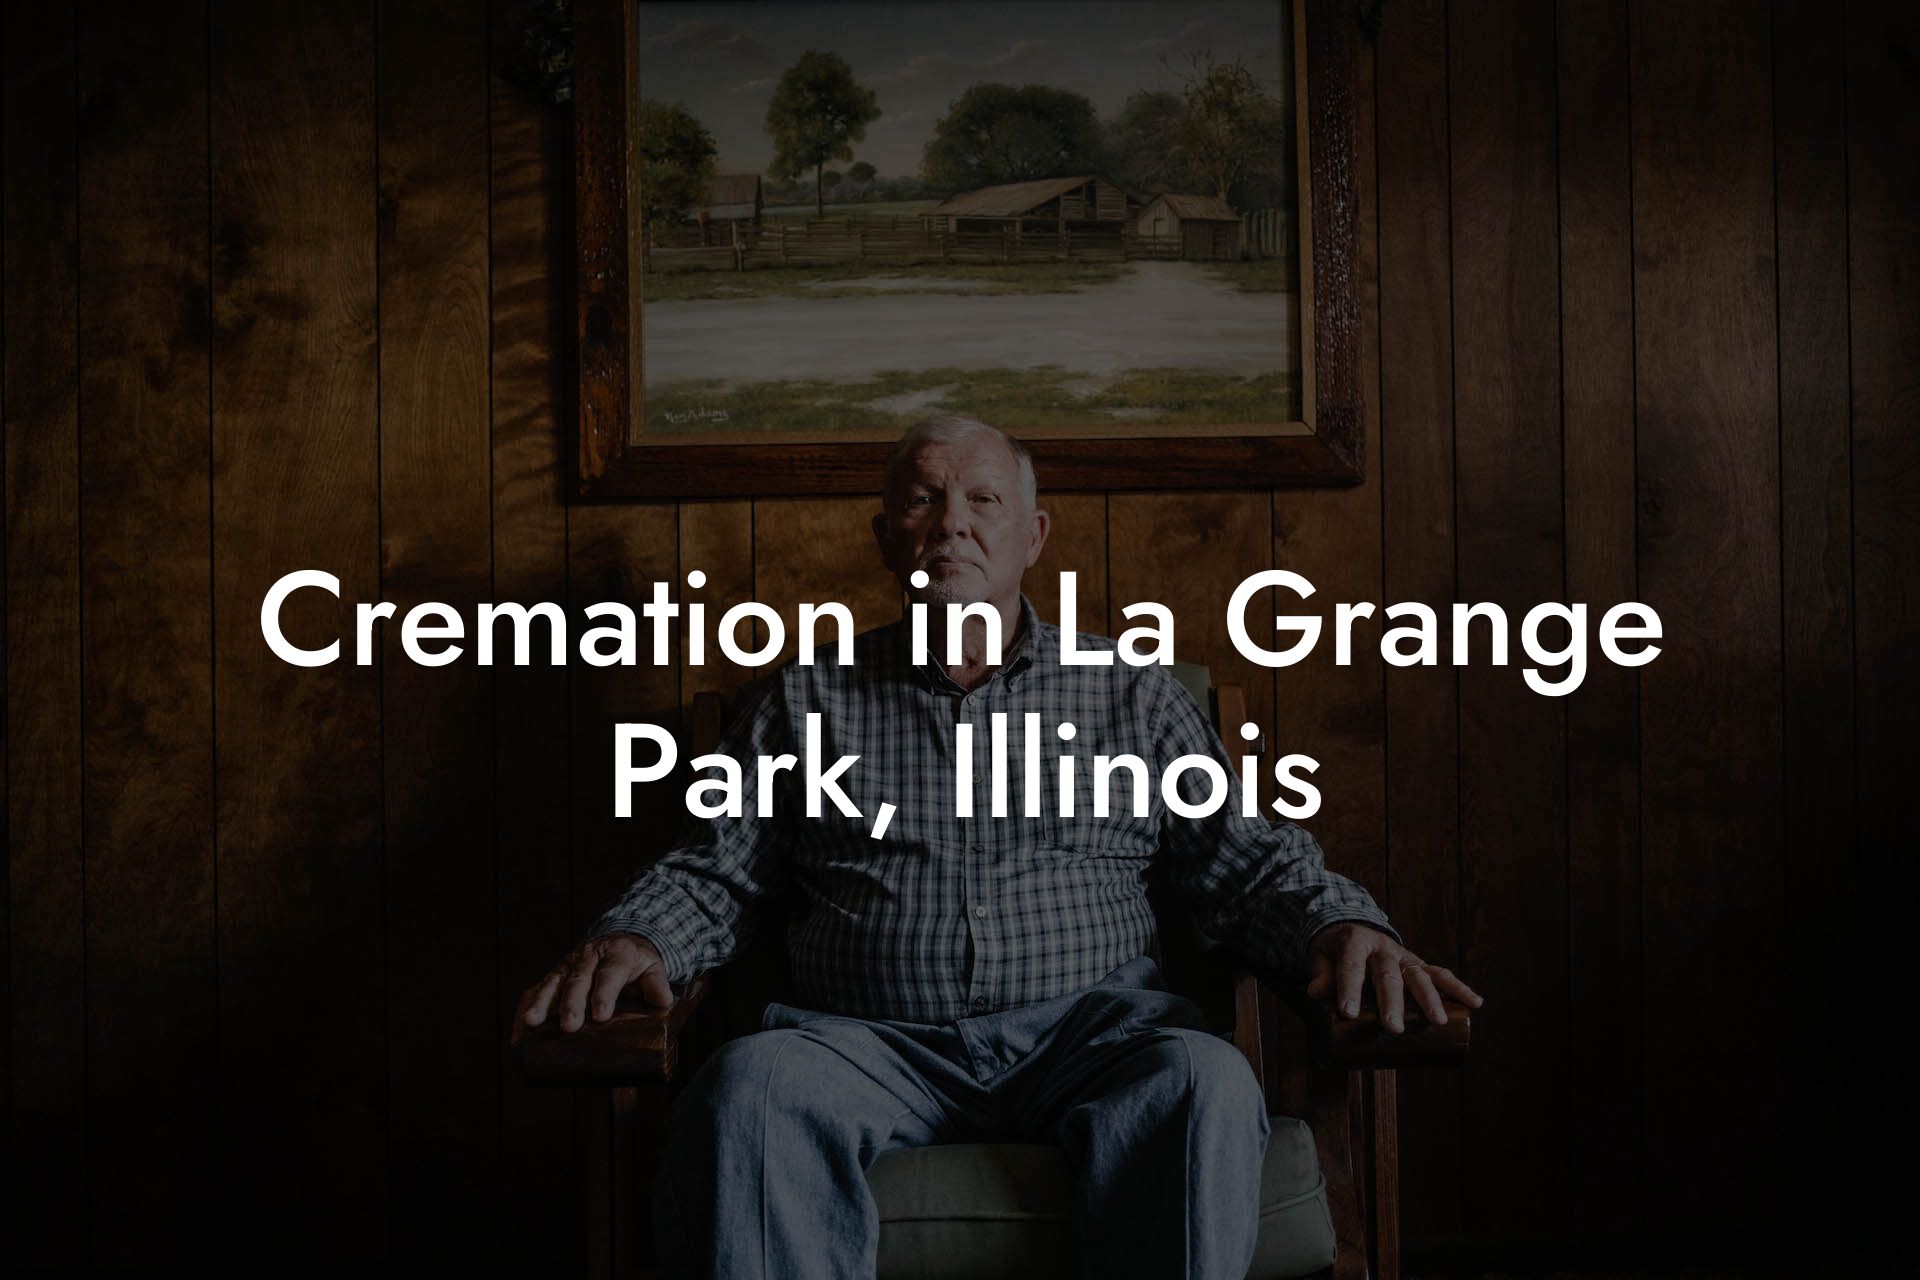 Cremation in La Grange Park, Illinois